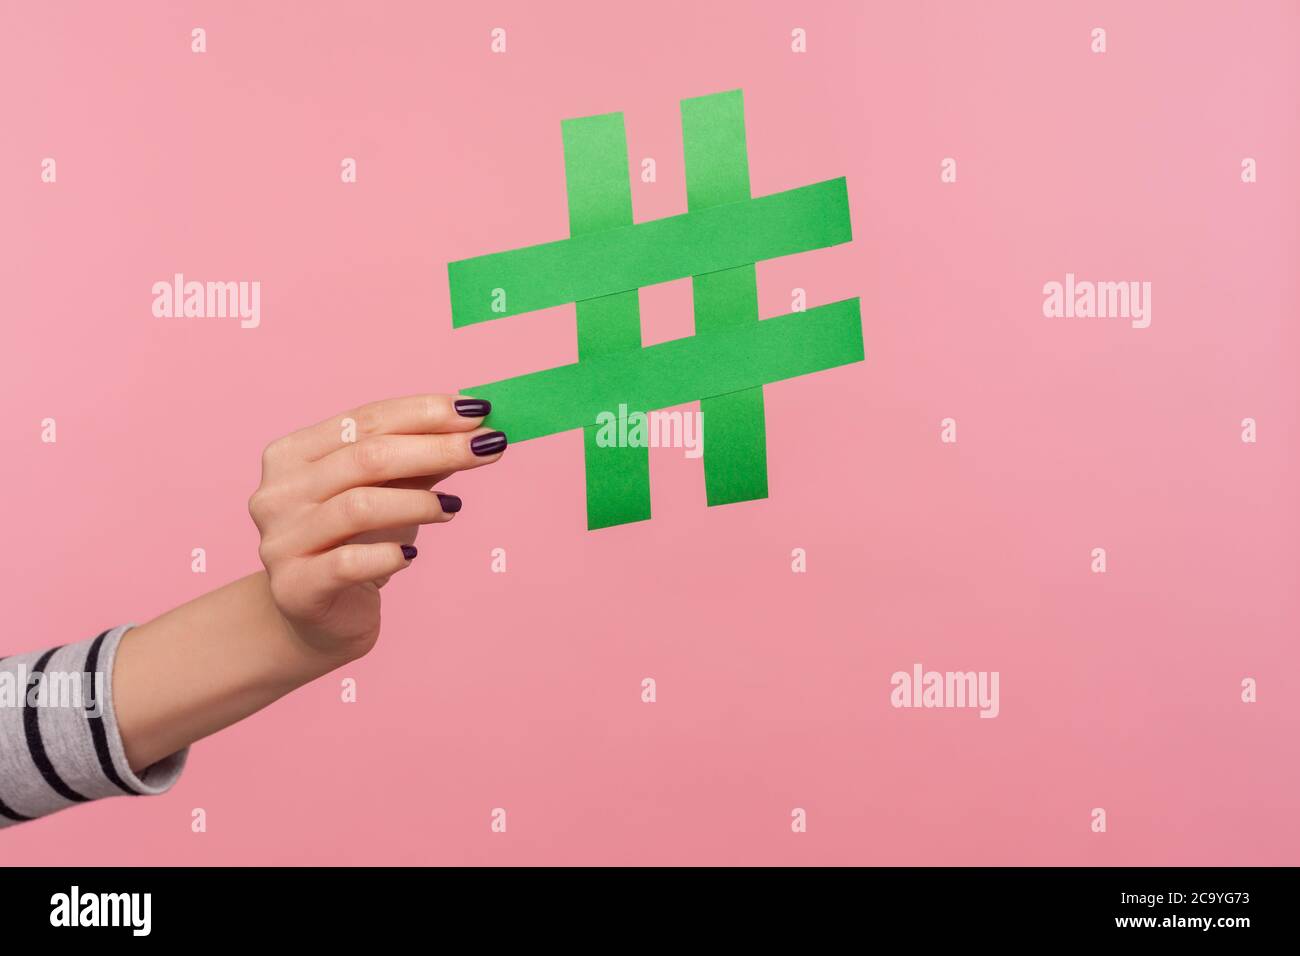 Nahaufnahme Hand mit großen grünen Papier Hashtag-Zeichen, zeigt Hash-Symbol als Empfehlung, um Internet-Trends, viralen Blog-Thema, berühmte Nachricht folgen. Stockfoto